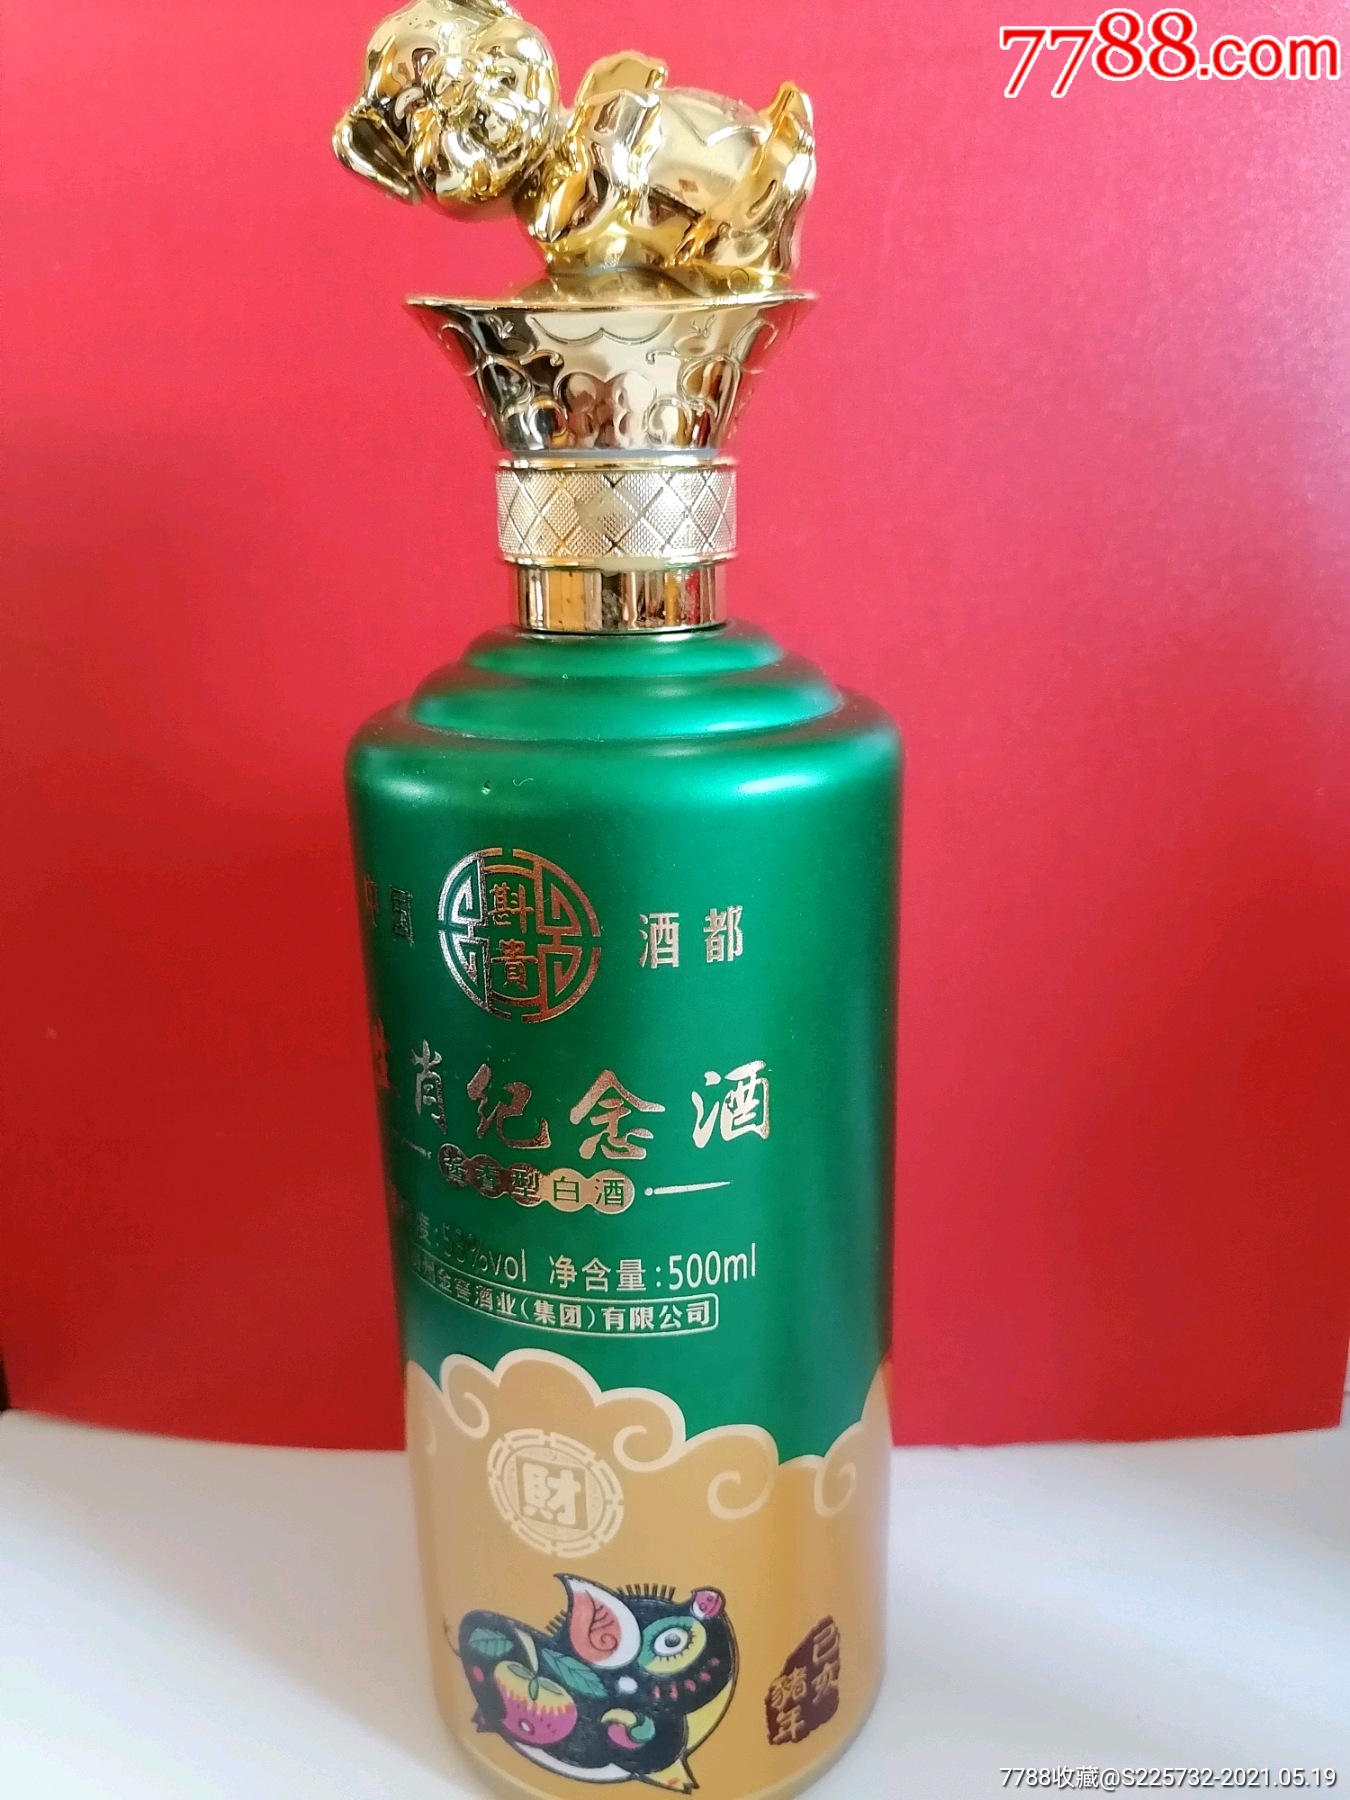 生肖纪念酒酒瓶(己亥猪年财)贵州金窖酒业(集团)有限公司